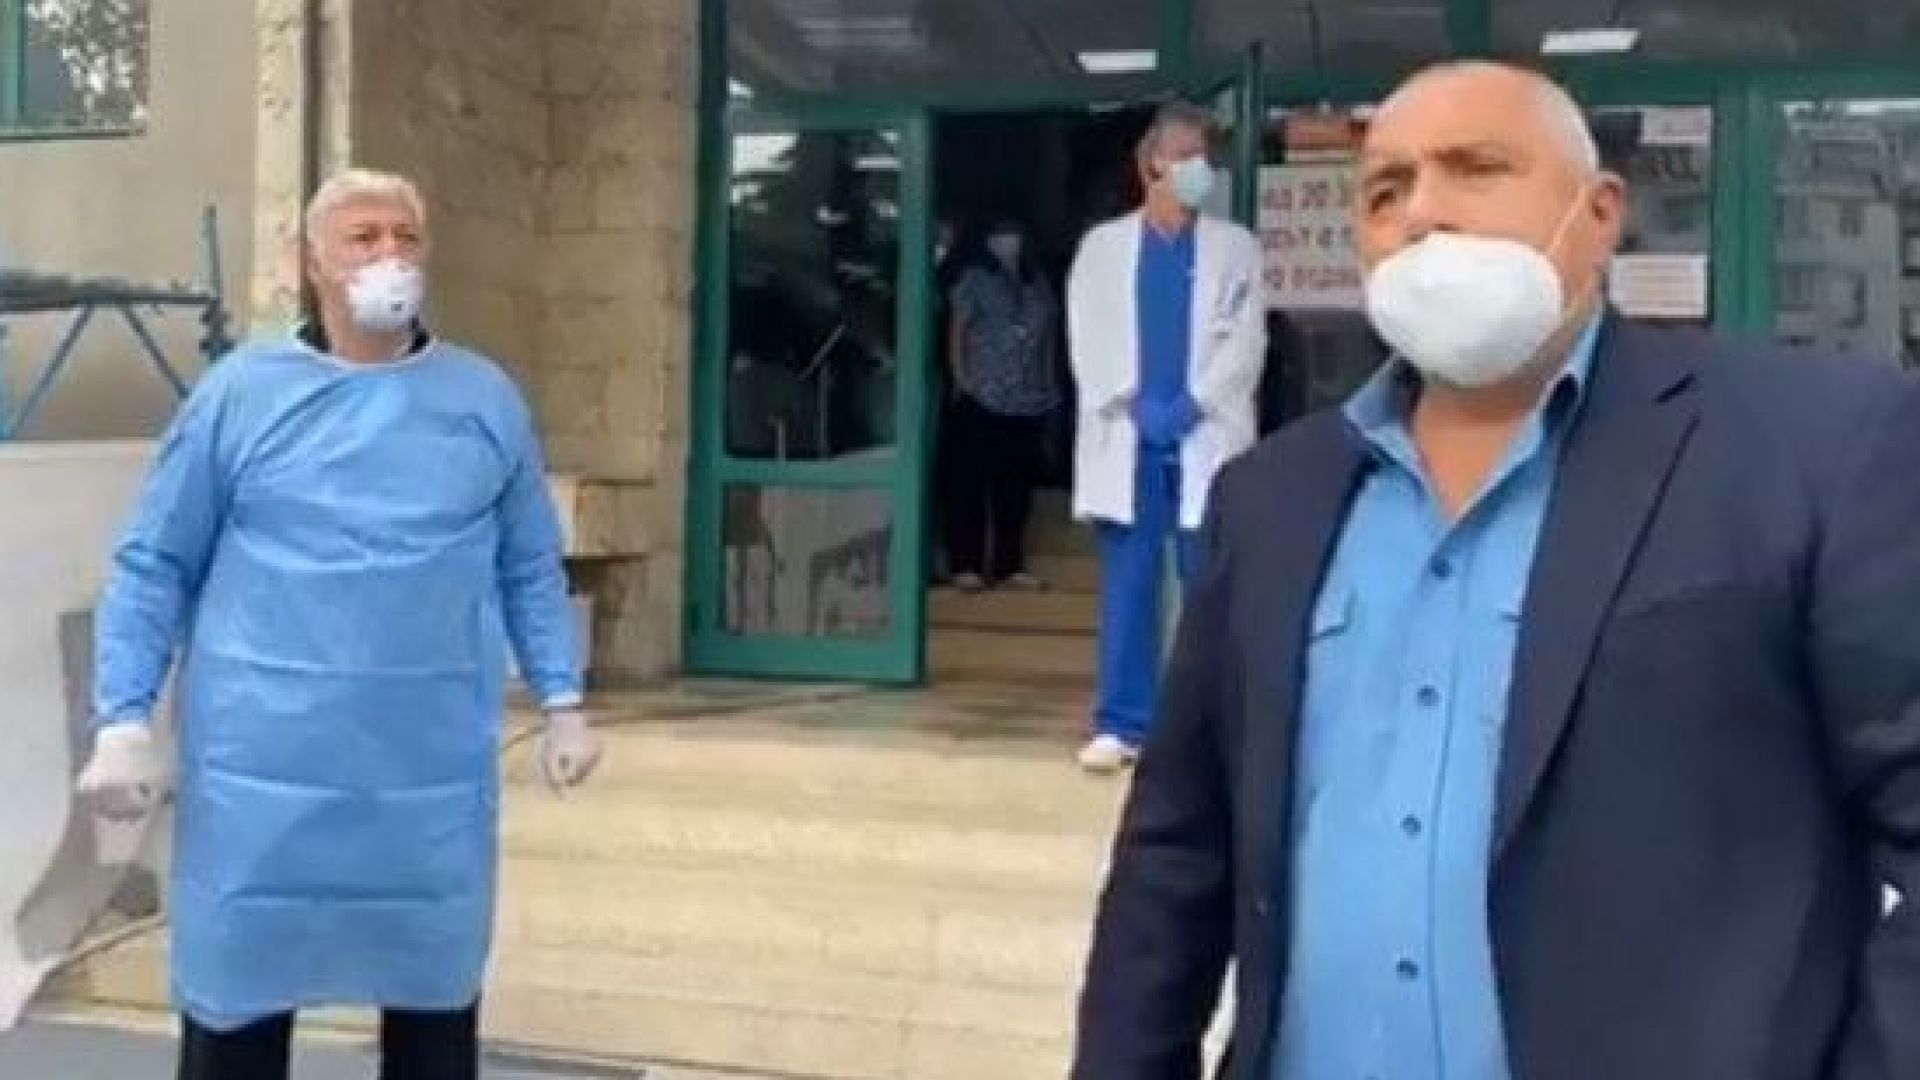 Борисов се срещна очи в очи с лекуващия се от коронавирус кмет на Пловдив (видео)